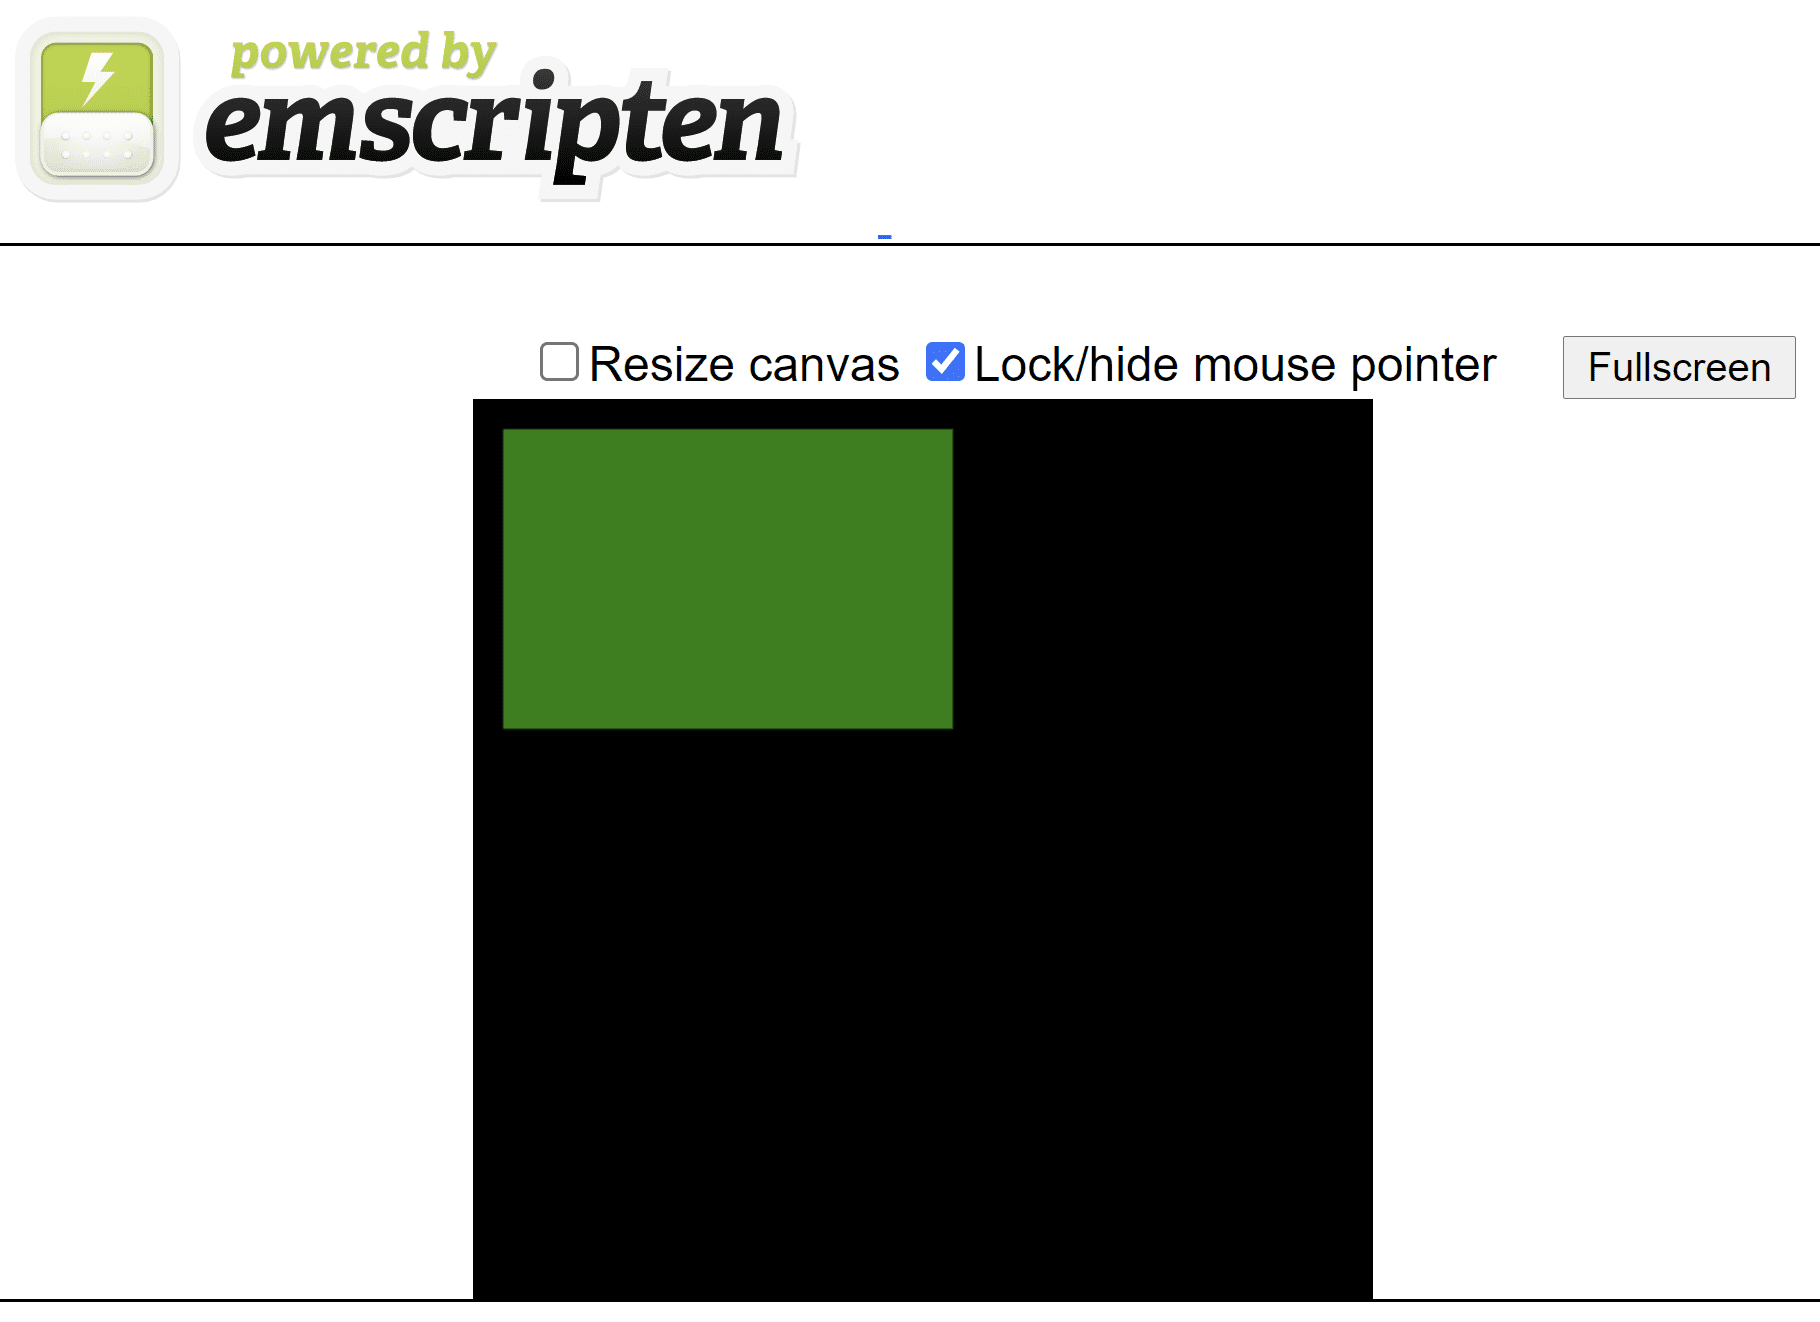 黒い正方形のキャンバスの上に緑色の長方形が表示されている、エミュレータが生成した HTML ページ。